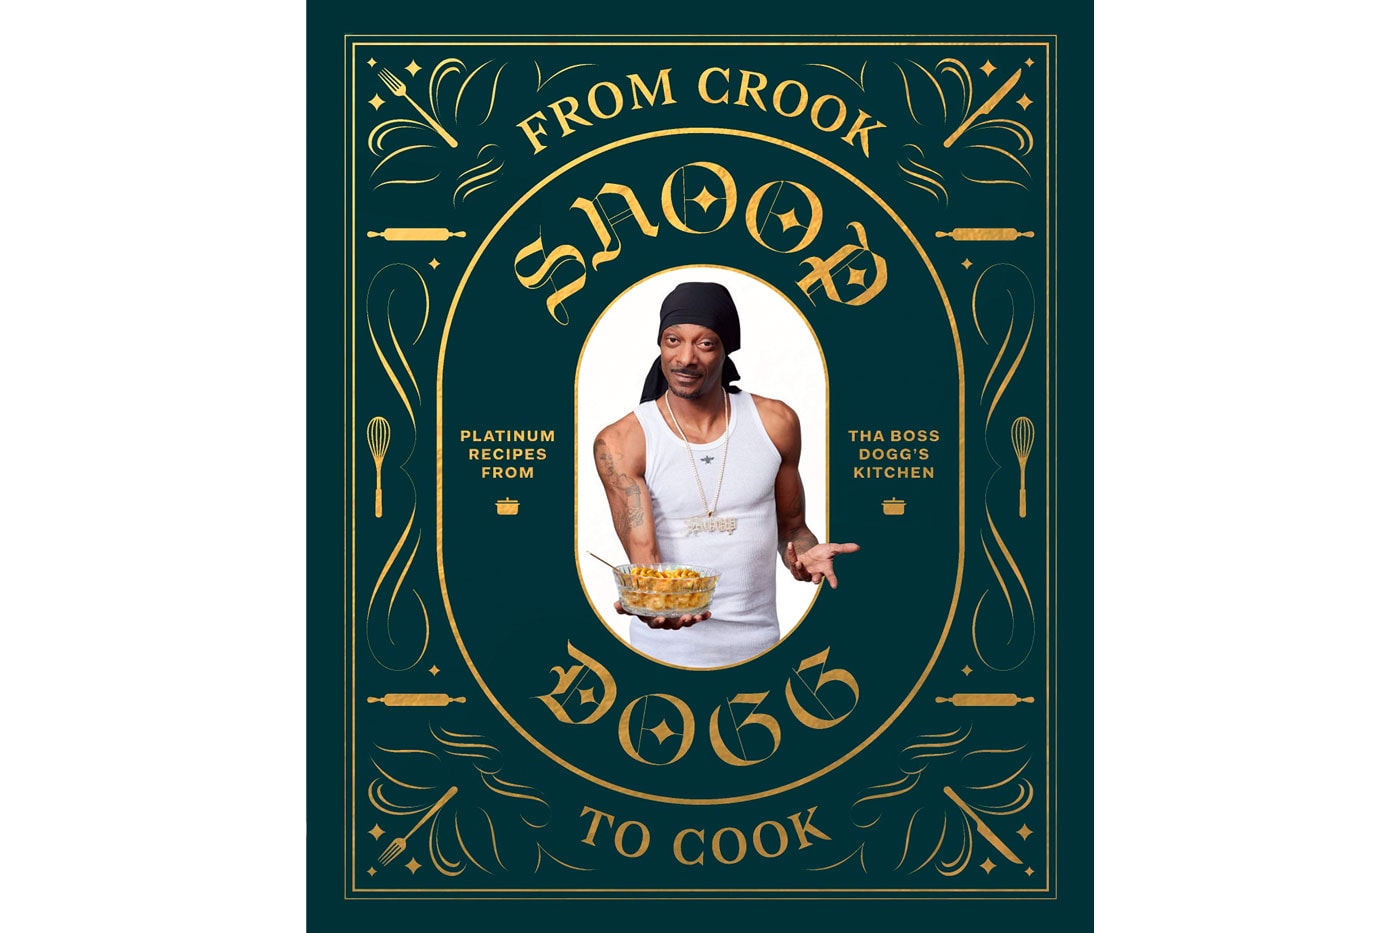 スヌープ・ドッグの料理本『スヌープ・ドッグのお料理教室』が発売決定 Snoop Dogg 'From Crook to Cook' Cookbook Japanese edition release info